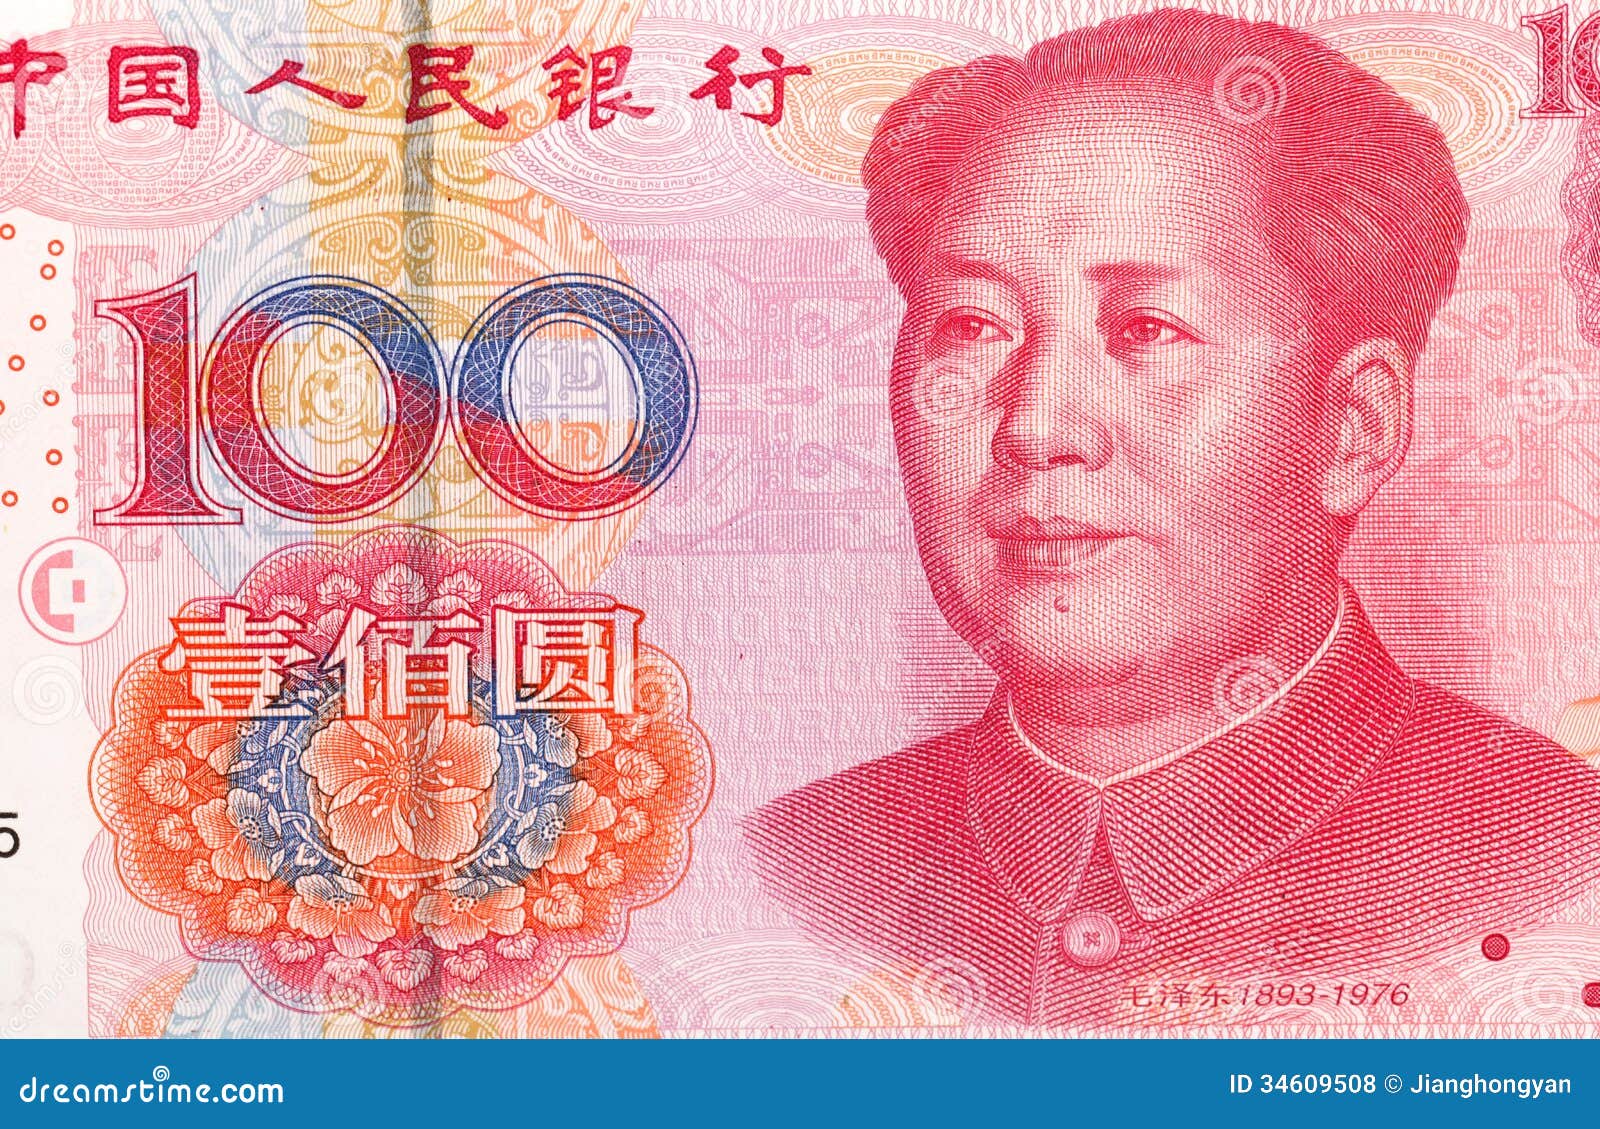 中国100元钞票与毛泽东画象的 库存图片. 图片 包括有 广告牌, 货币, 概念, 支付, 投资, 商业 - 138277363